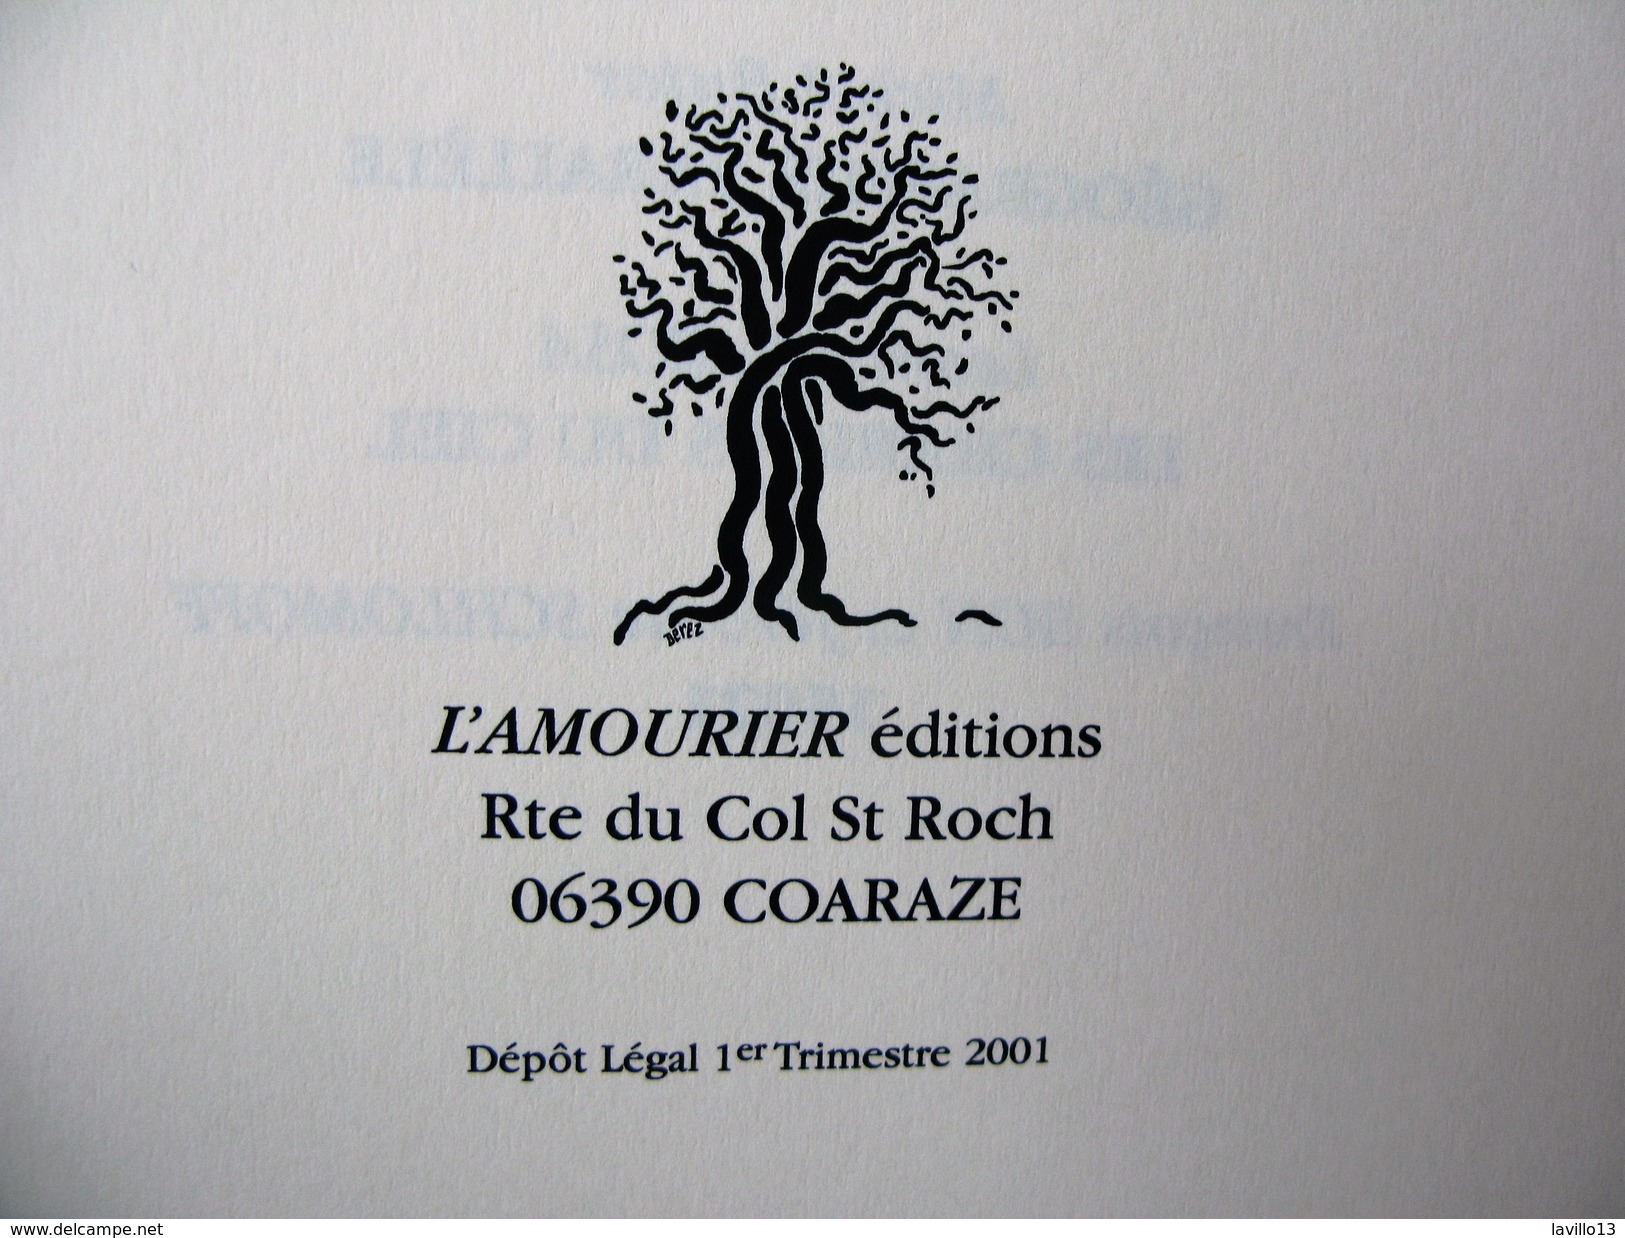 CARNETS " NOCES ERRATIQUES" FRANK LALOU Edts L'AMOURIER. COARAZE. 2001 - Grafismo & Diseño